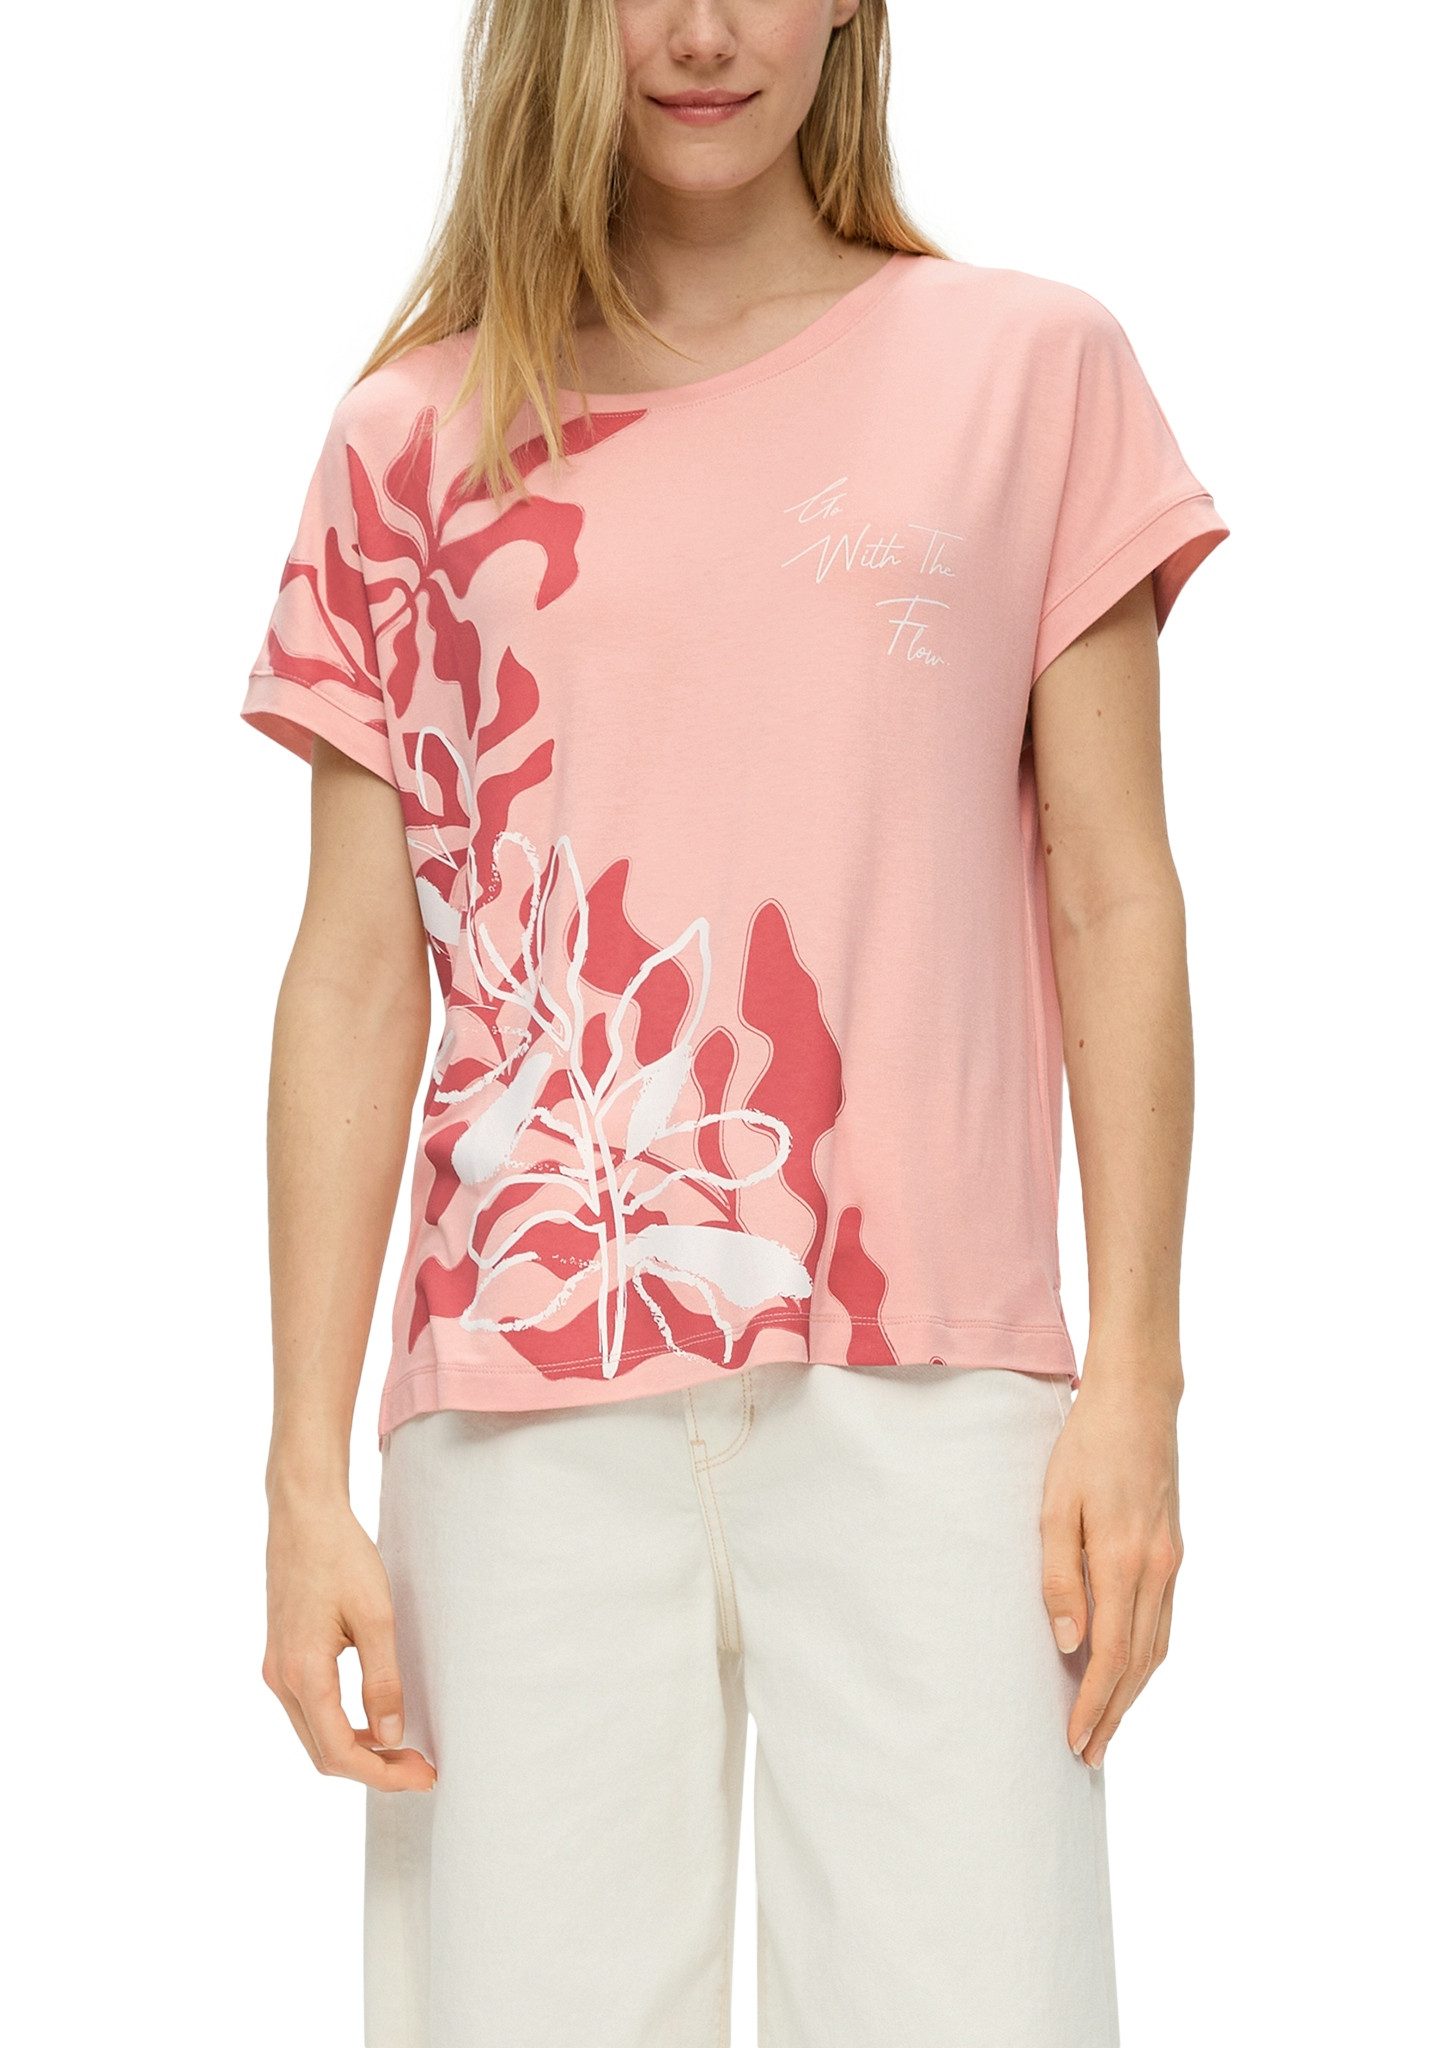 s.Oliver Print-Shirt mit großem Floral-Print